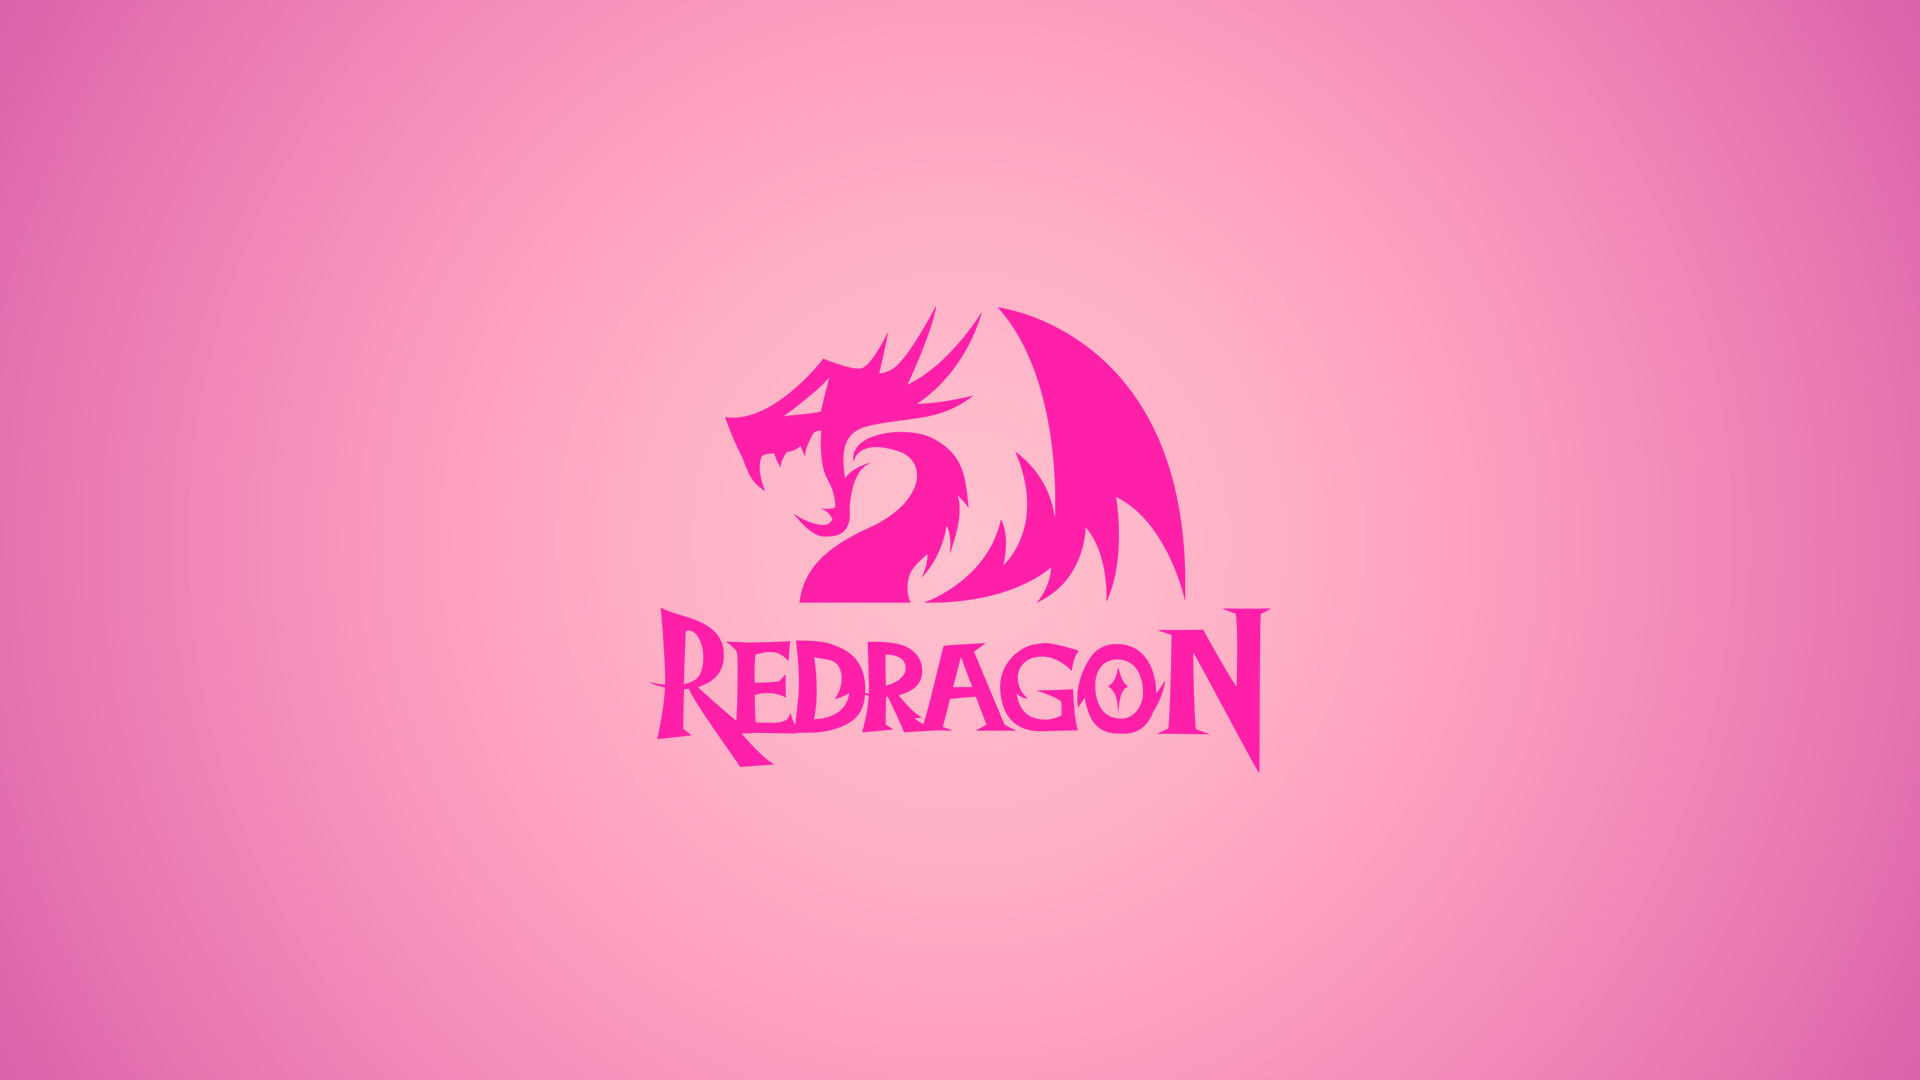 Redragon PC Gaming Logo Pink Background 1920x1080